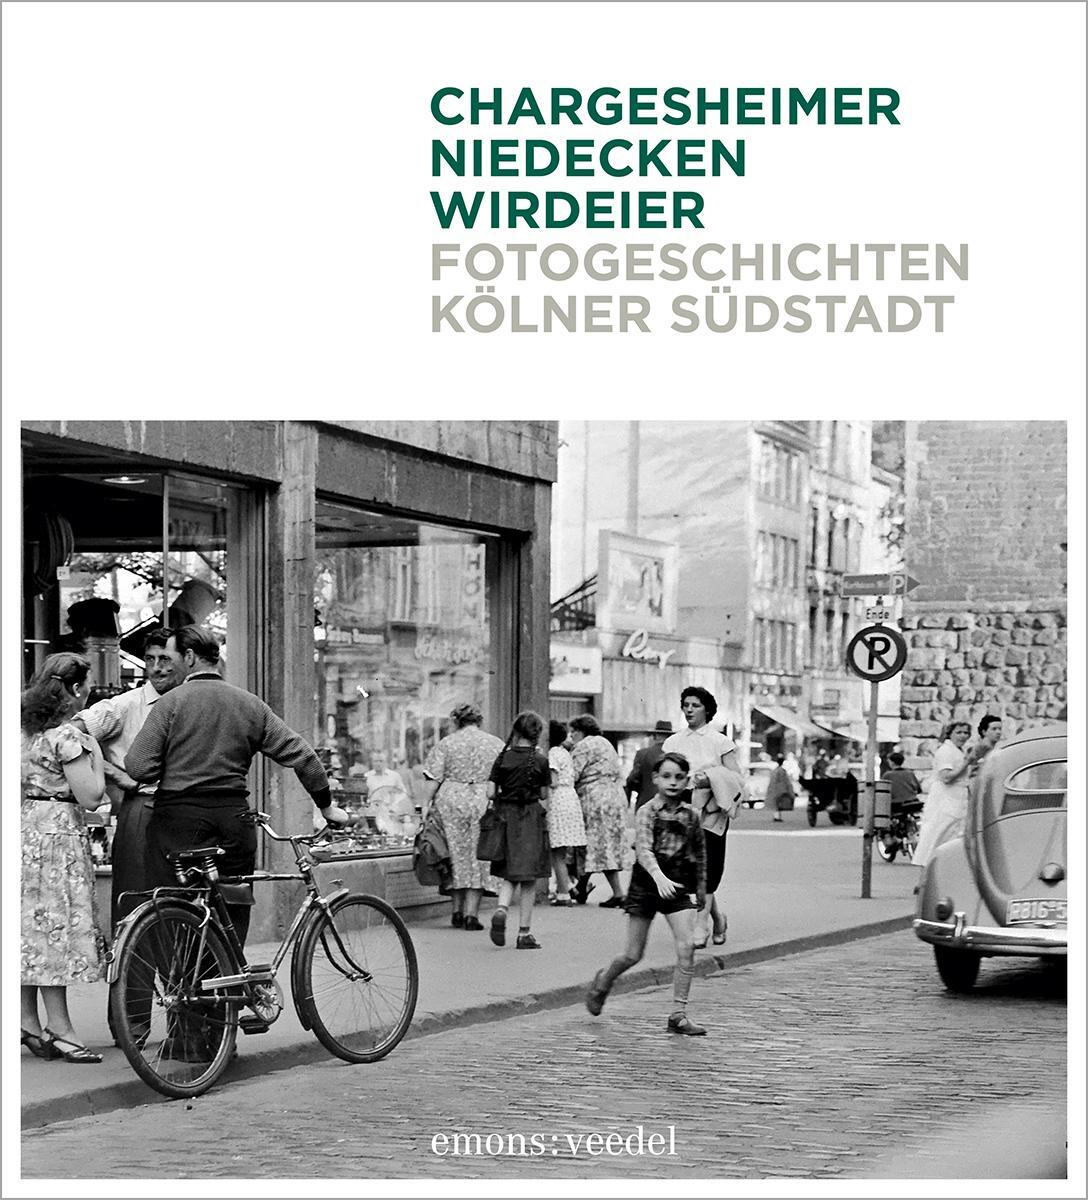 Fotogeschichten Kölner Südstadt - Niedecken, Wolfgang/Chargesheimer